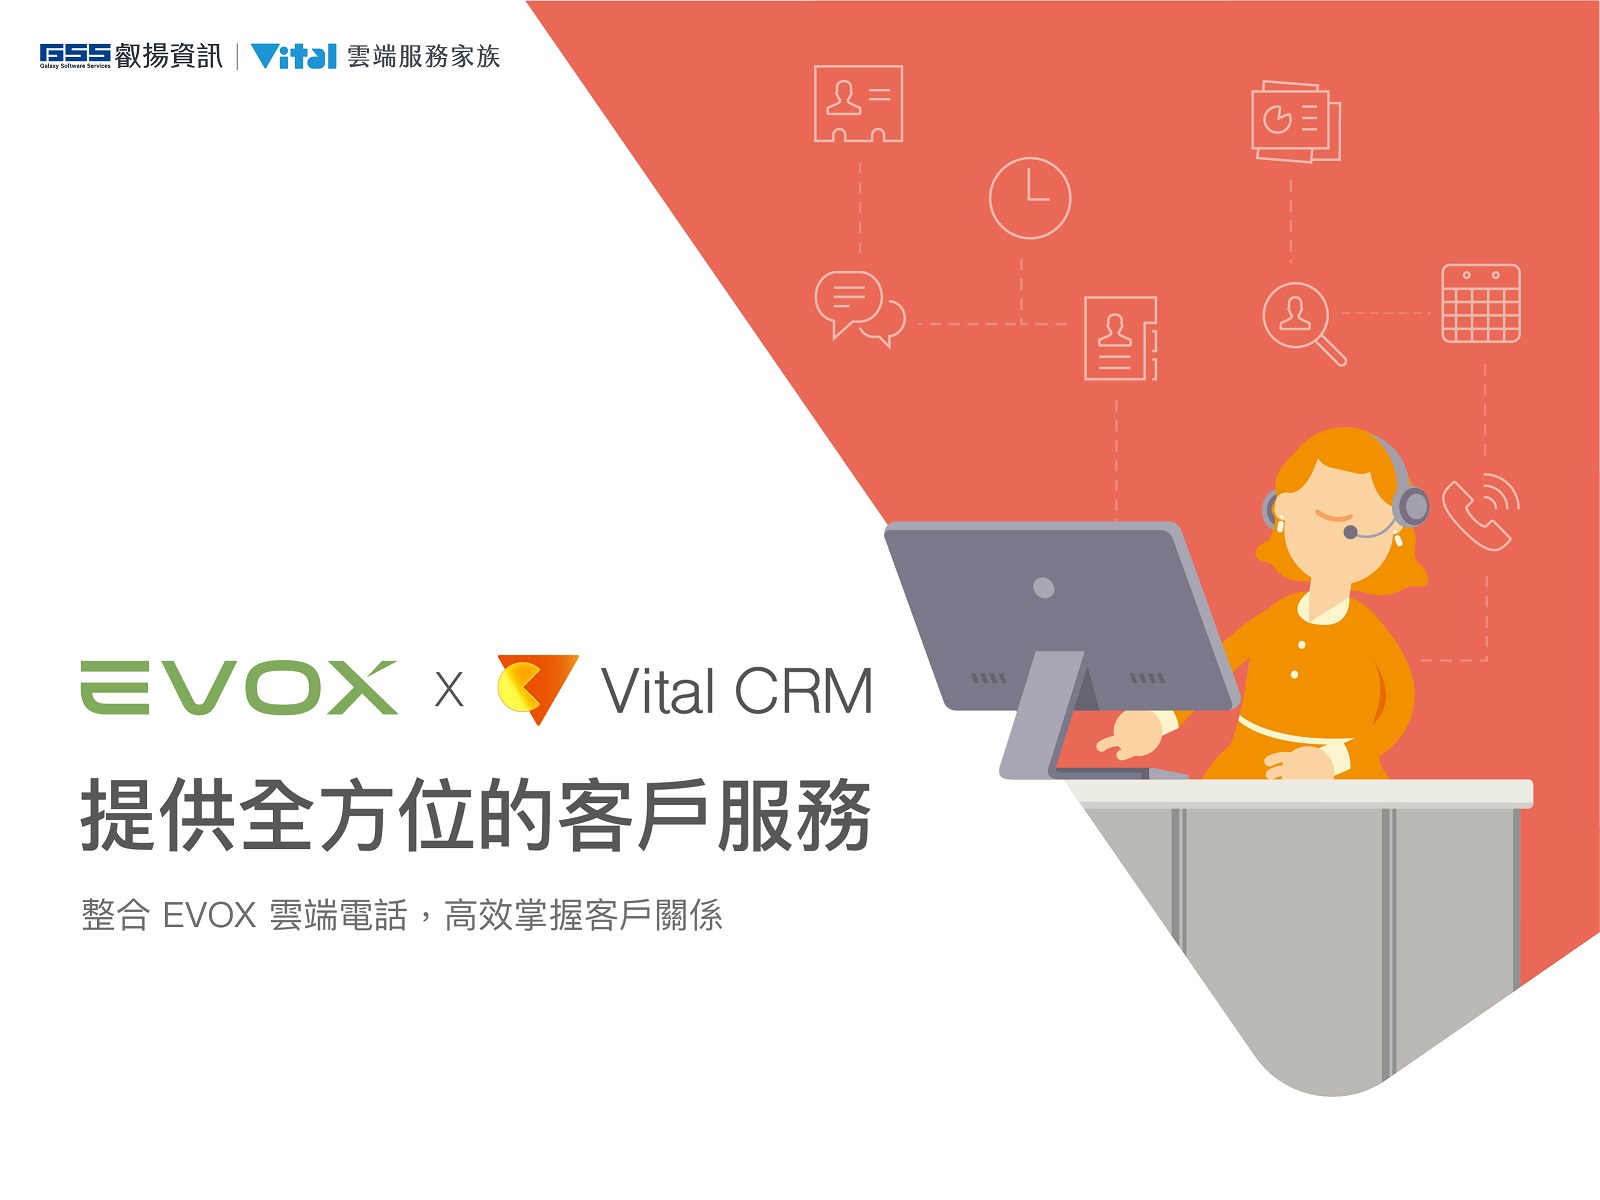 大檔圖說Vital CRM串連EVOX Connect升級企業客服將服務更加細緻化打造口碑好評